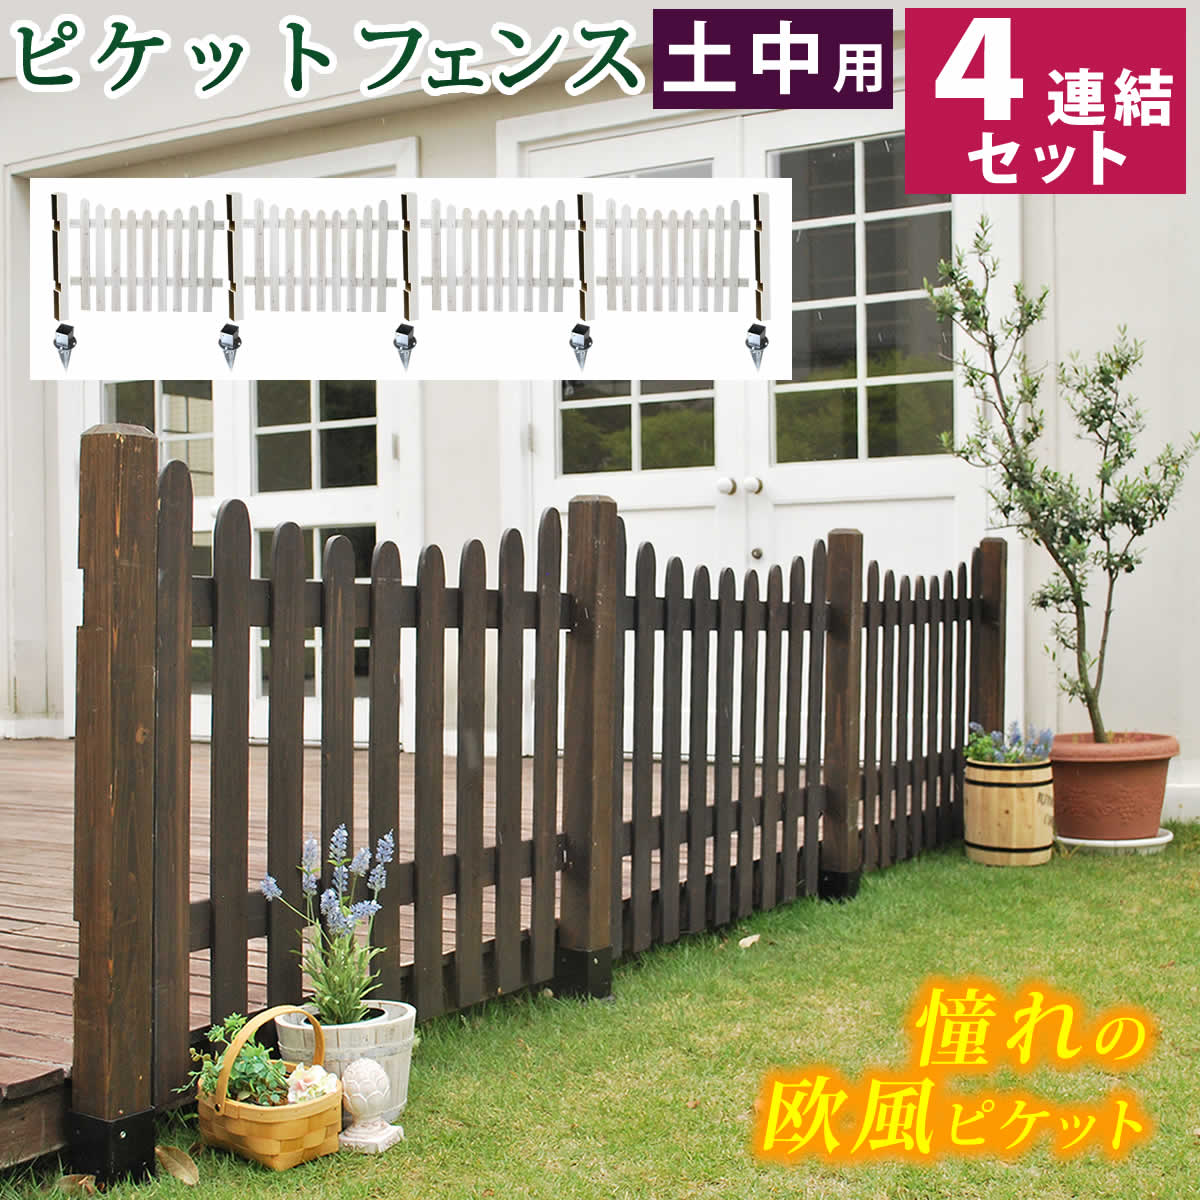 平地用ウッドポール固定金具 4個セット HBN72-4Pを激安で販売する京都の村田家具